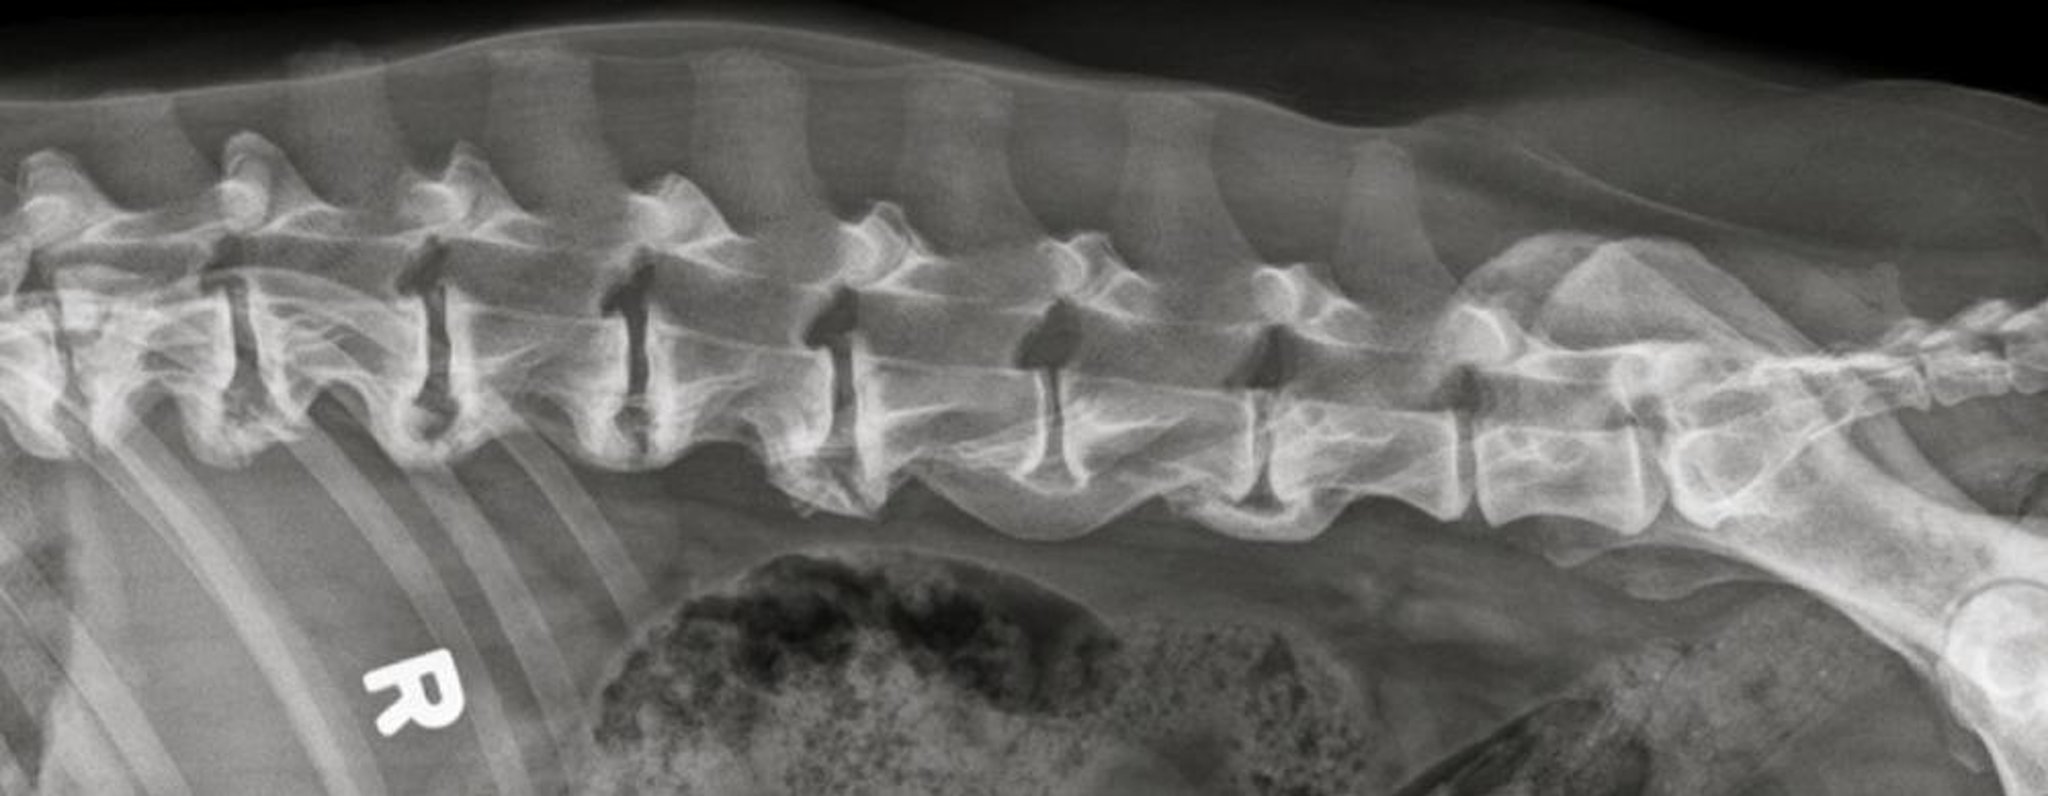 Spondylosis deformans, dog